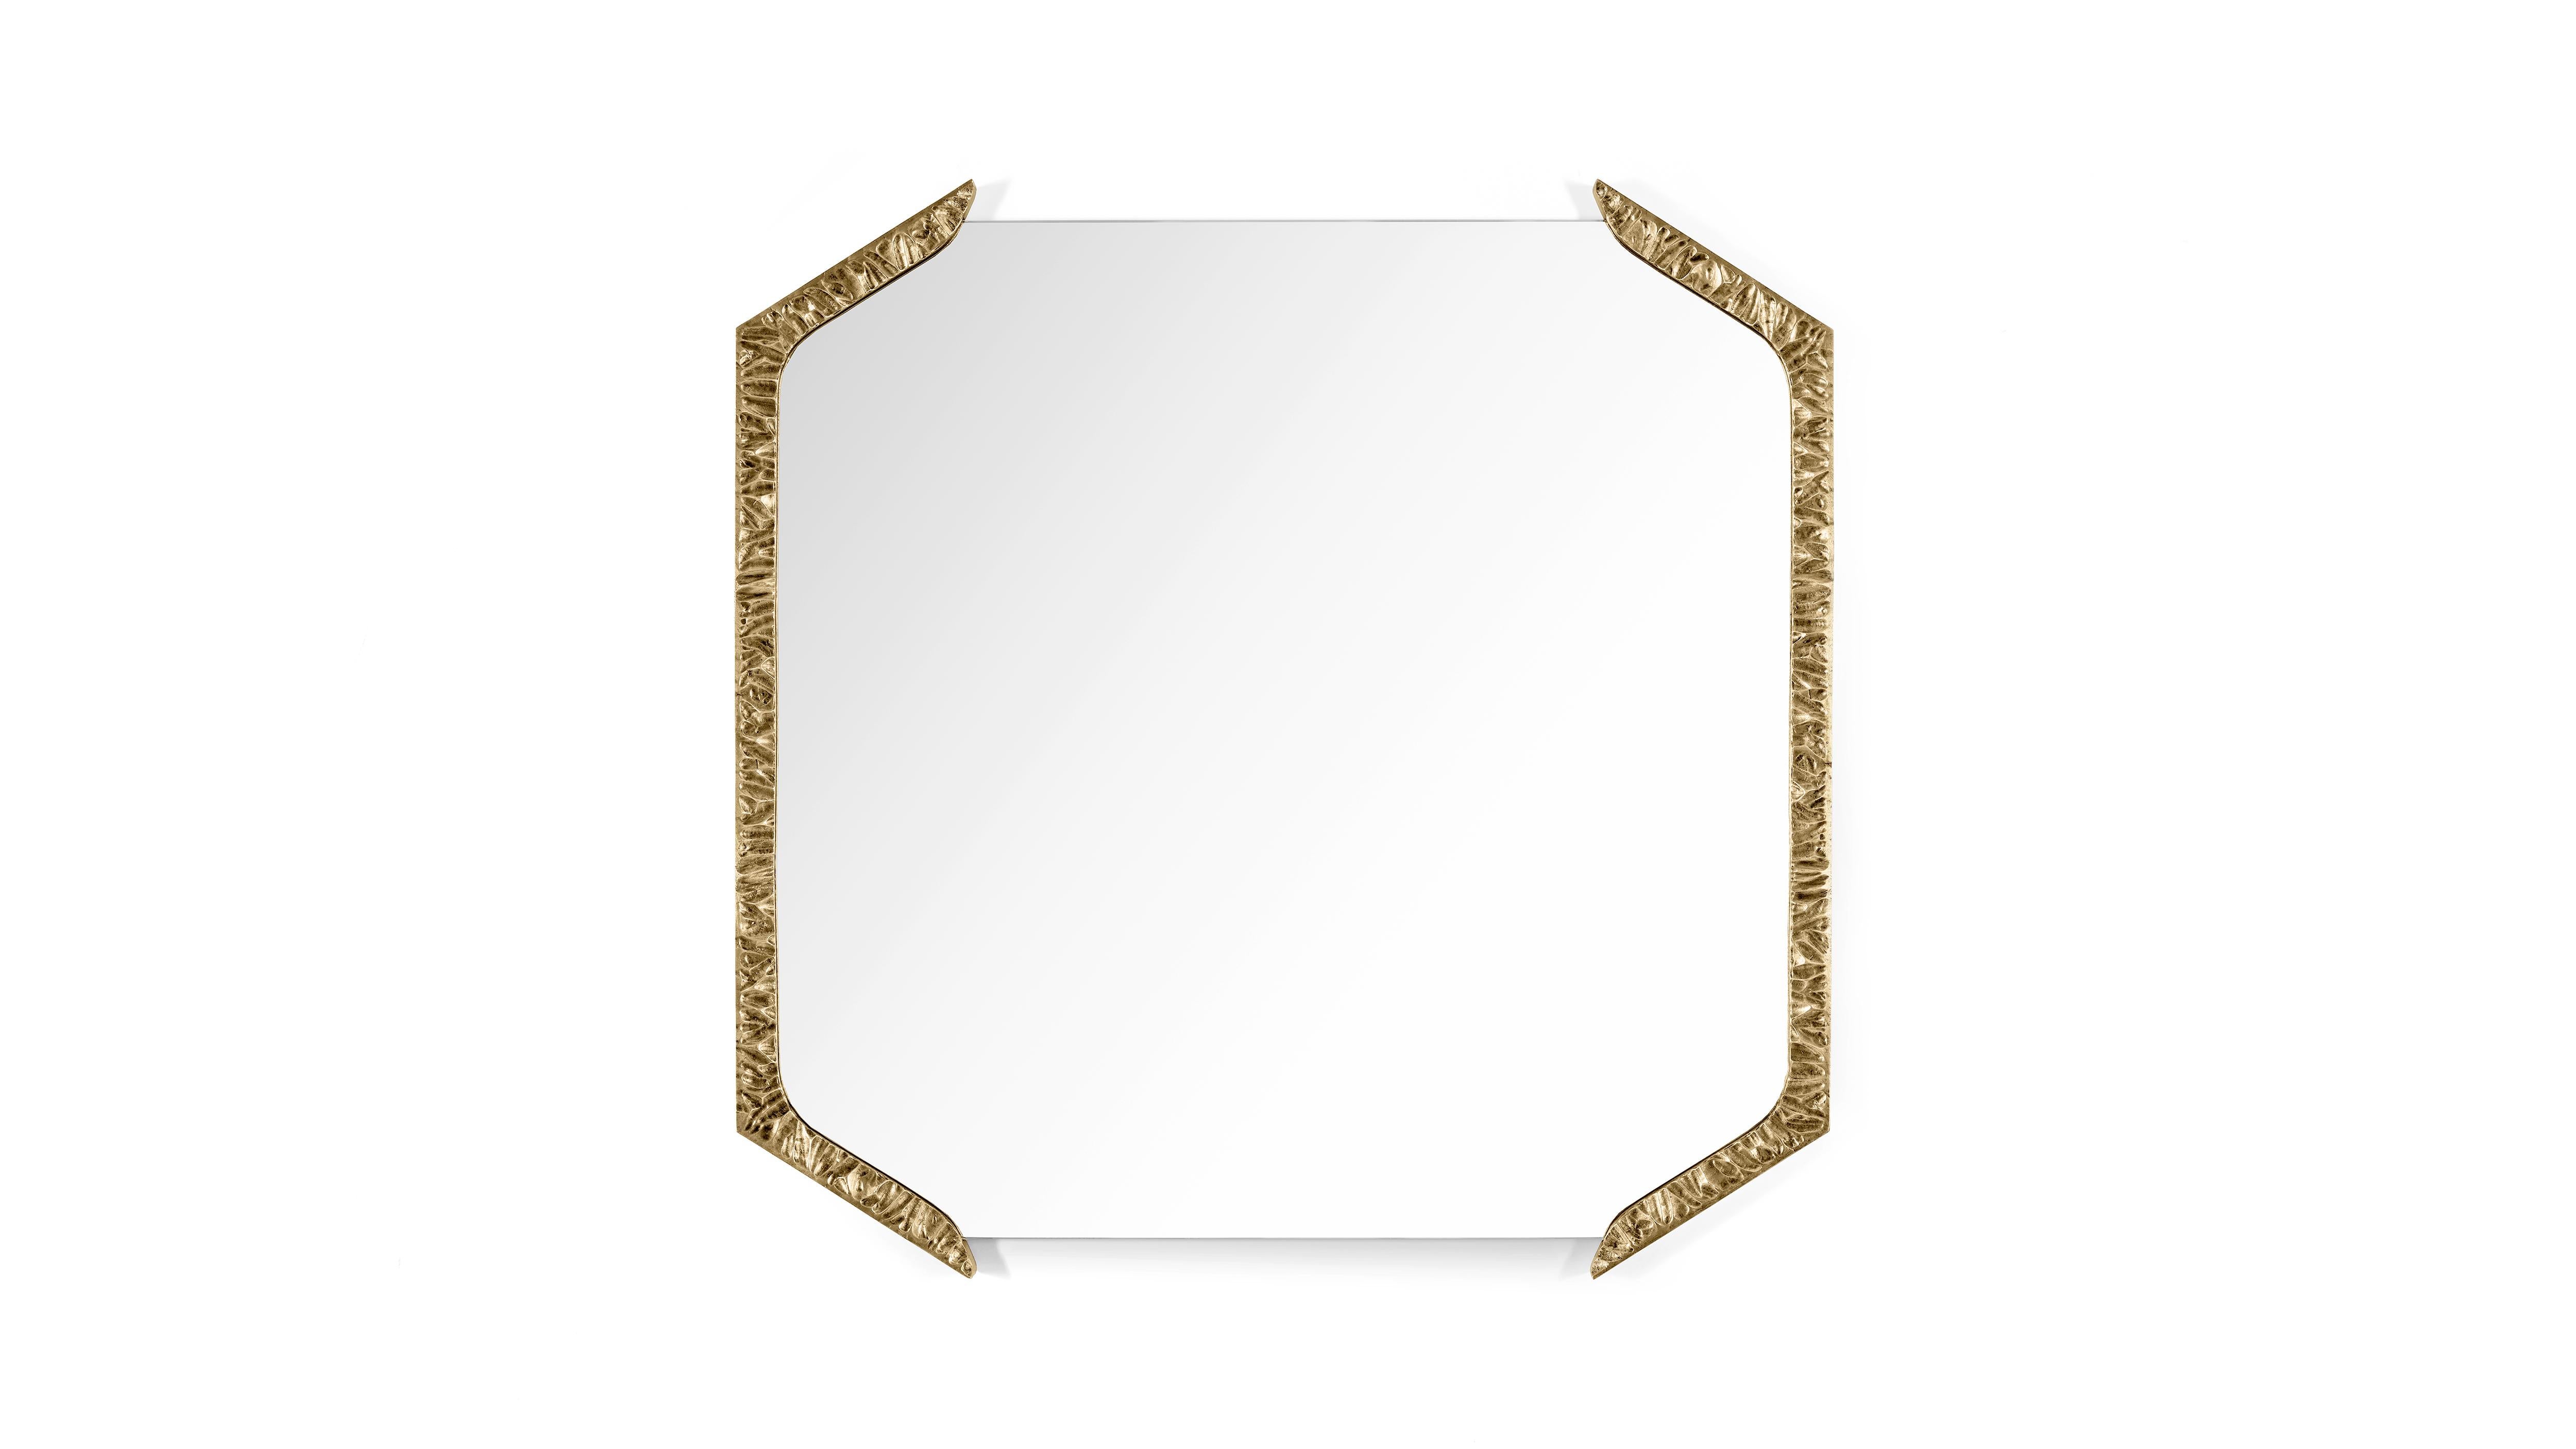 Miroir carré Alentejo en laiton par InsidherLand
Dimensions : D 3 x L 85 x H 85 cm.
MATERIAL : Laiton moulé patiné, miroir transparent.
22 kg.
Disponible dans d'autres finitions.

Le miroir Alentejo a une approche conceptuelle similaire à celle des